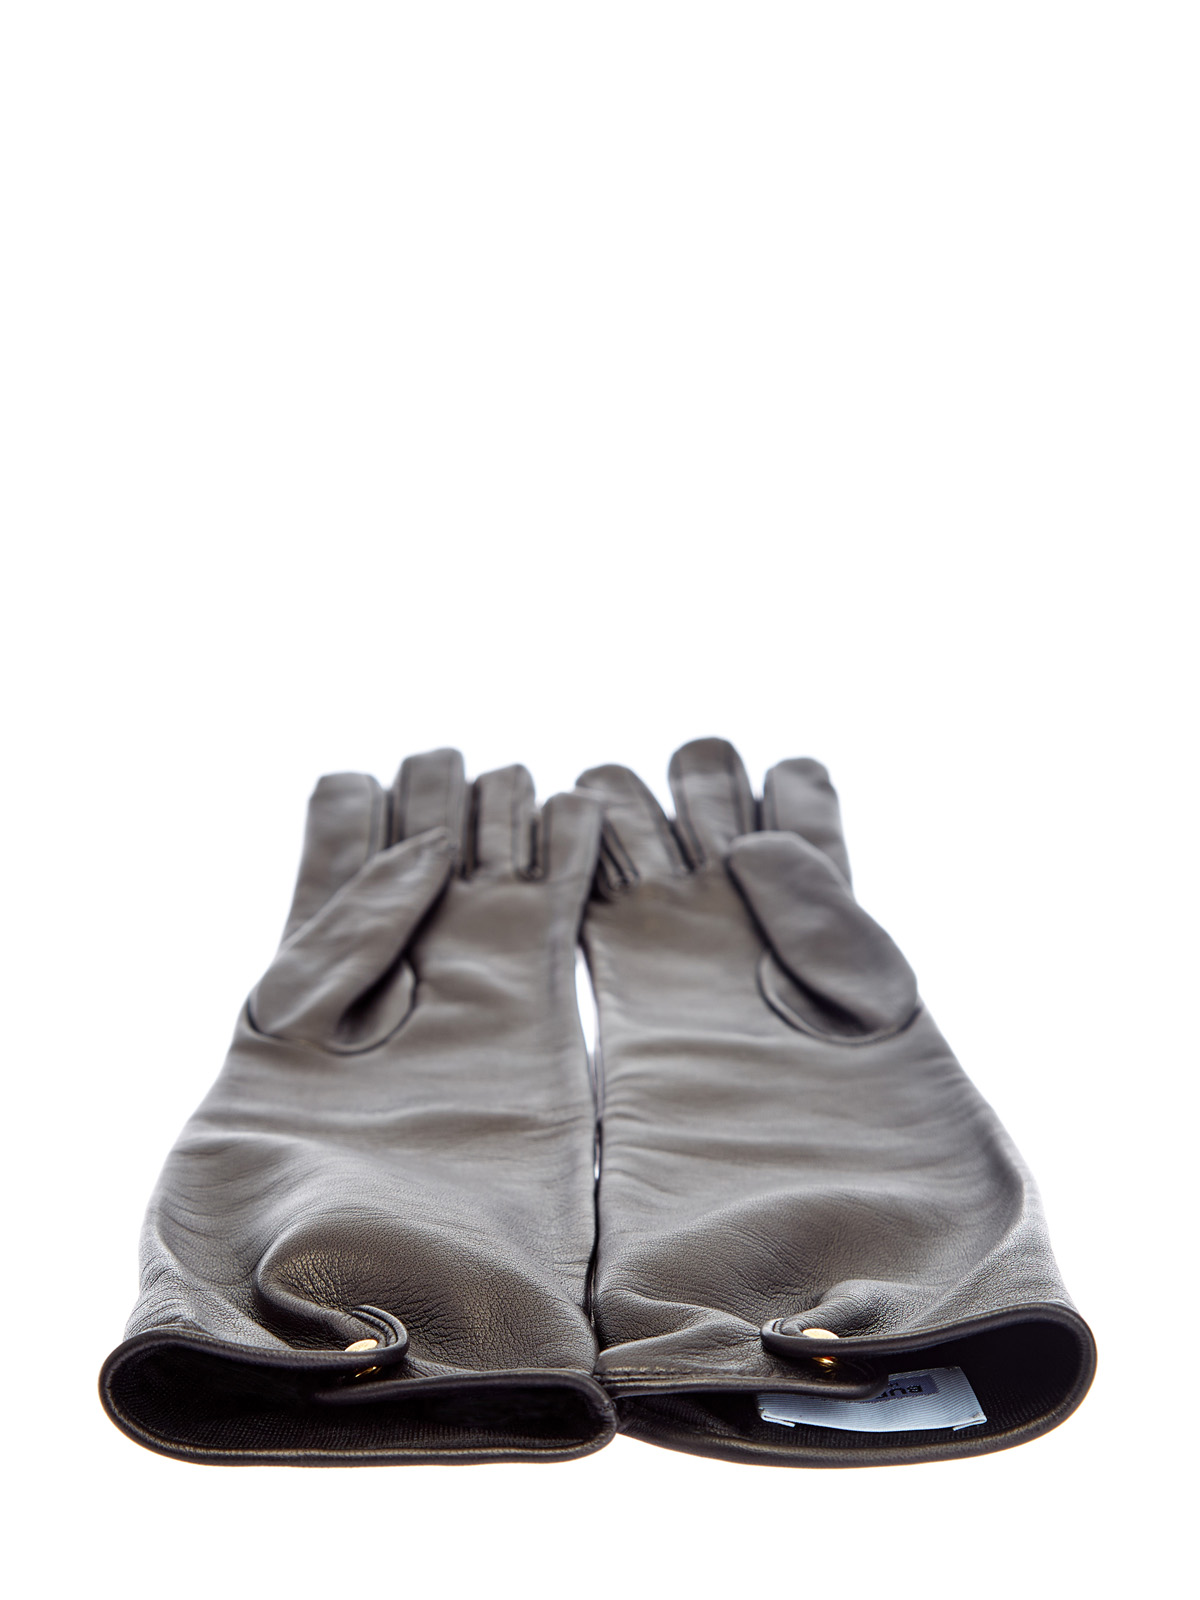 Высокие перчатки из кожи ягненка с кашемировой подкладкой BURBERRY, цвет черный, размер XS;S;M - фото 3